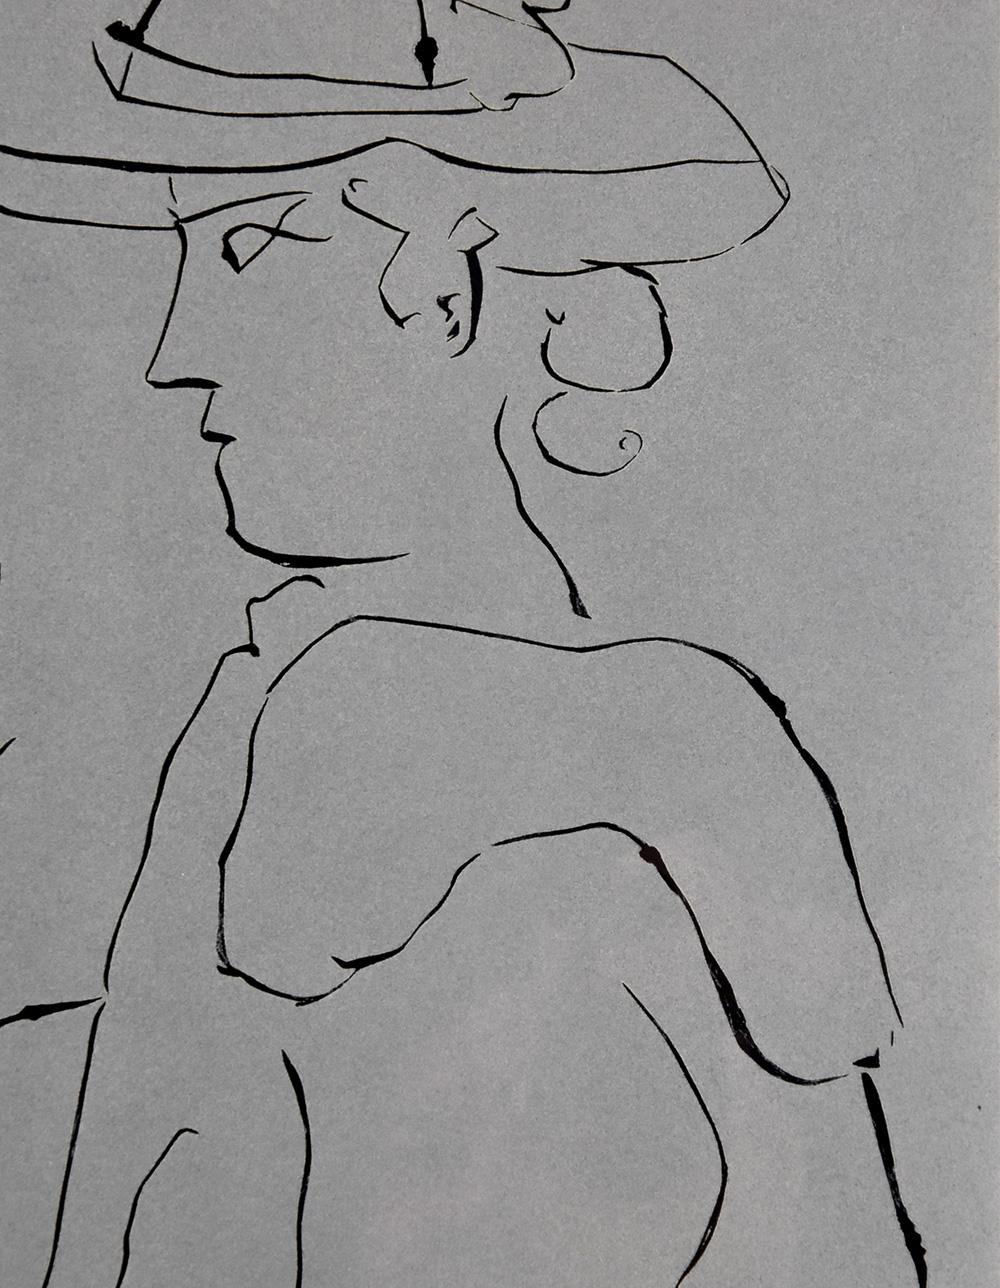 Picador debout avec son cheval et une femme (Picador, Frau und Pferd), 1959 (Moderne), Print, von Pablo Picasso